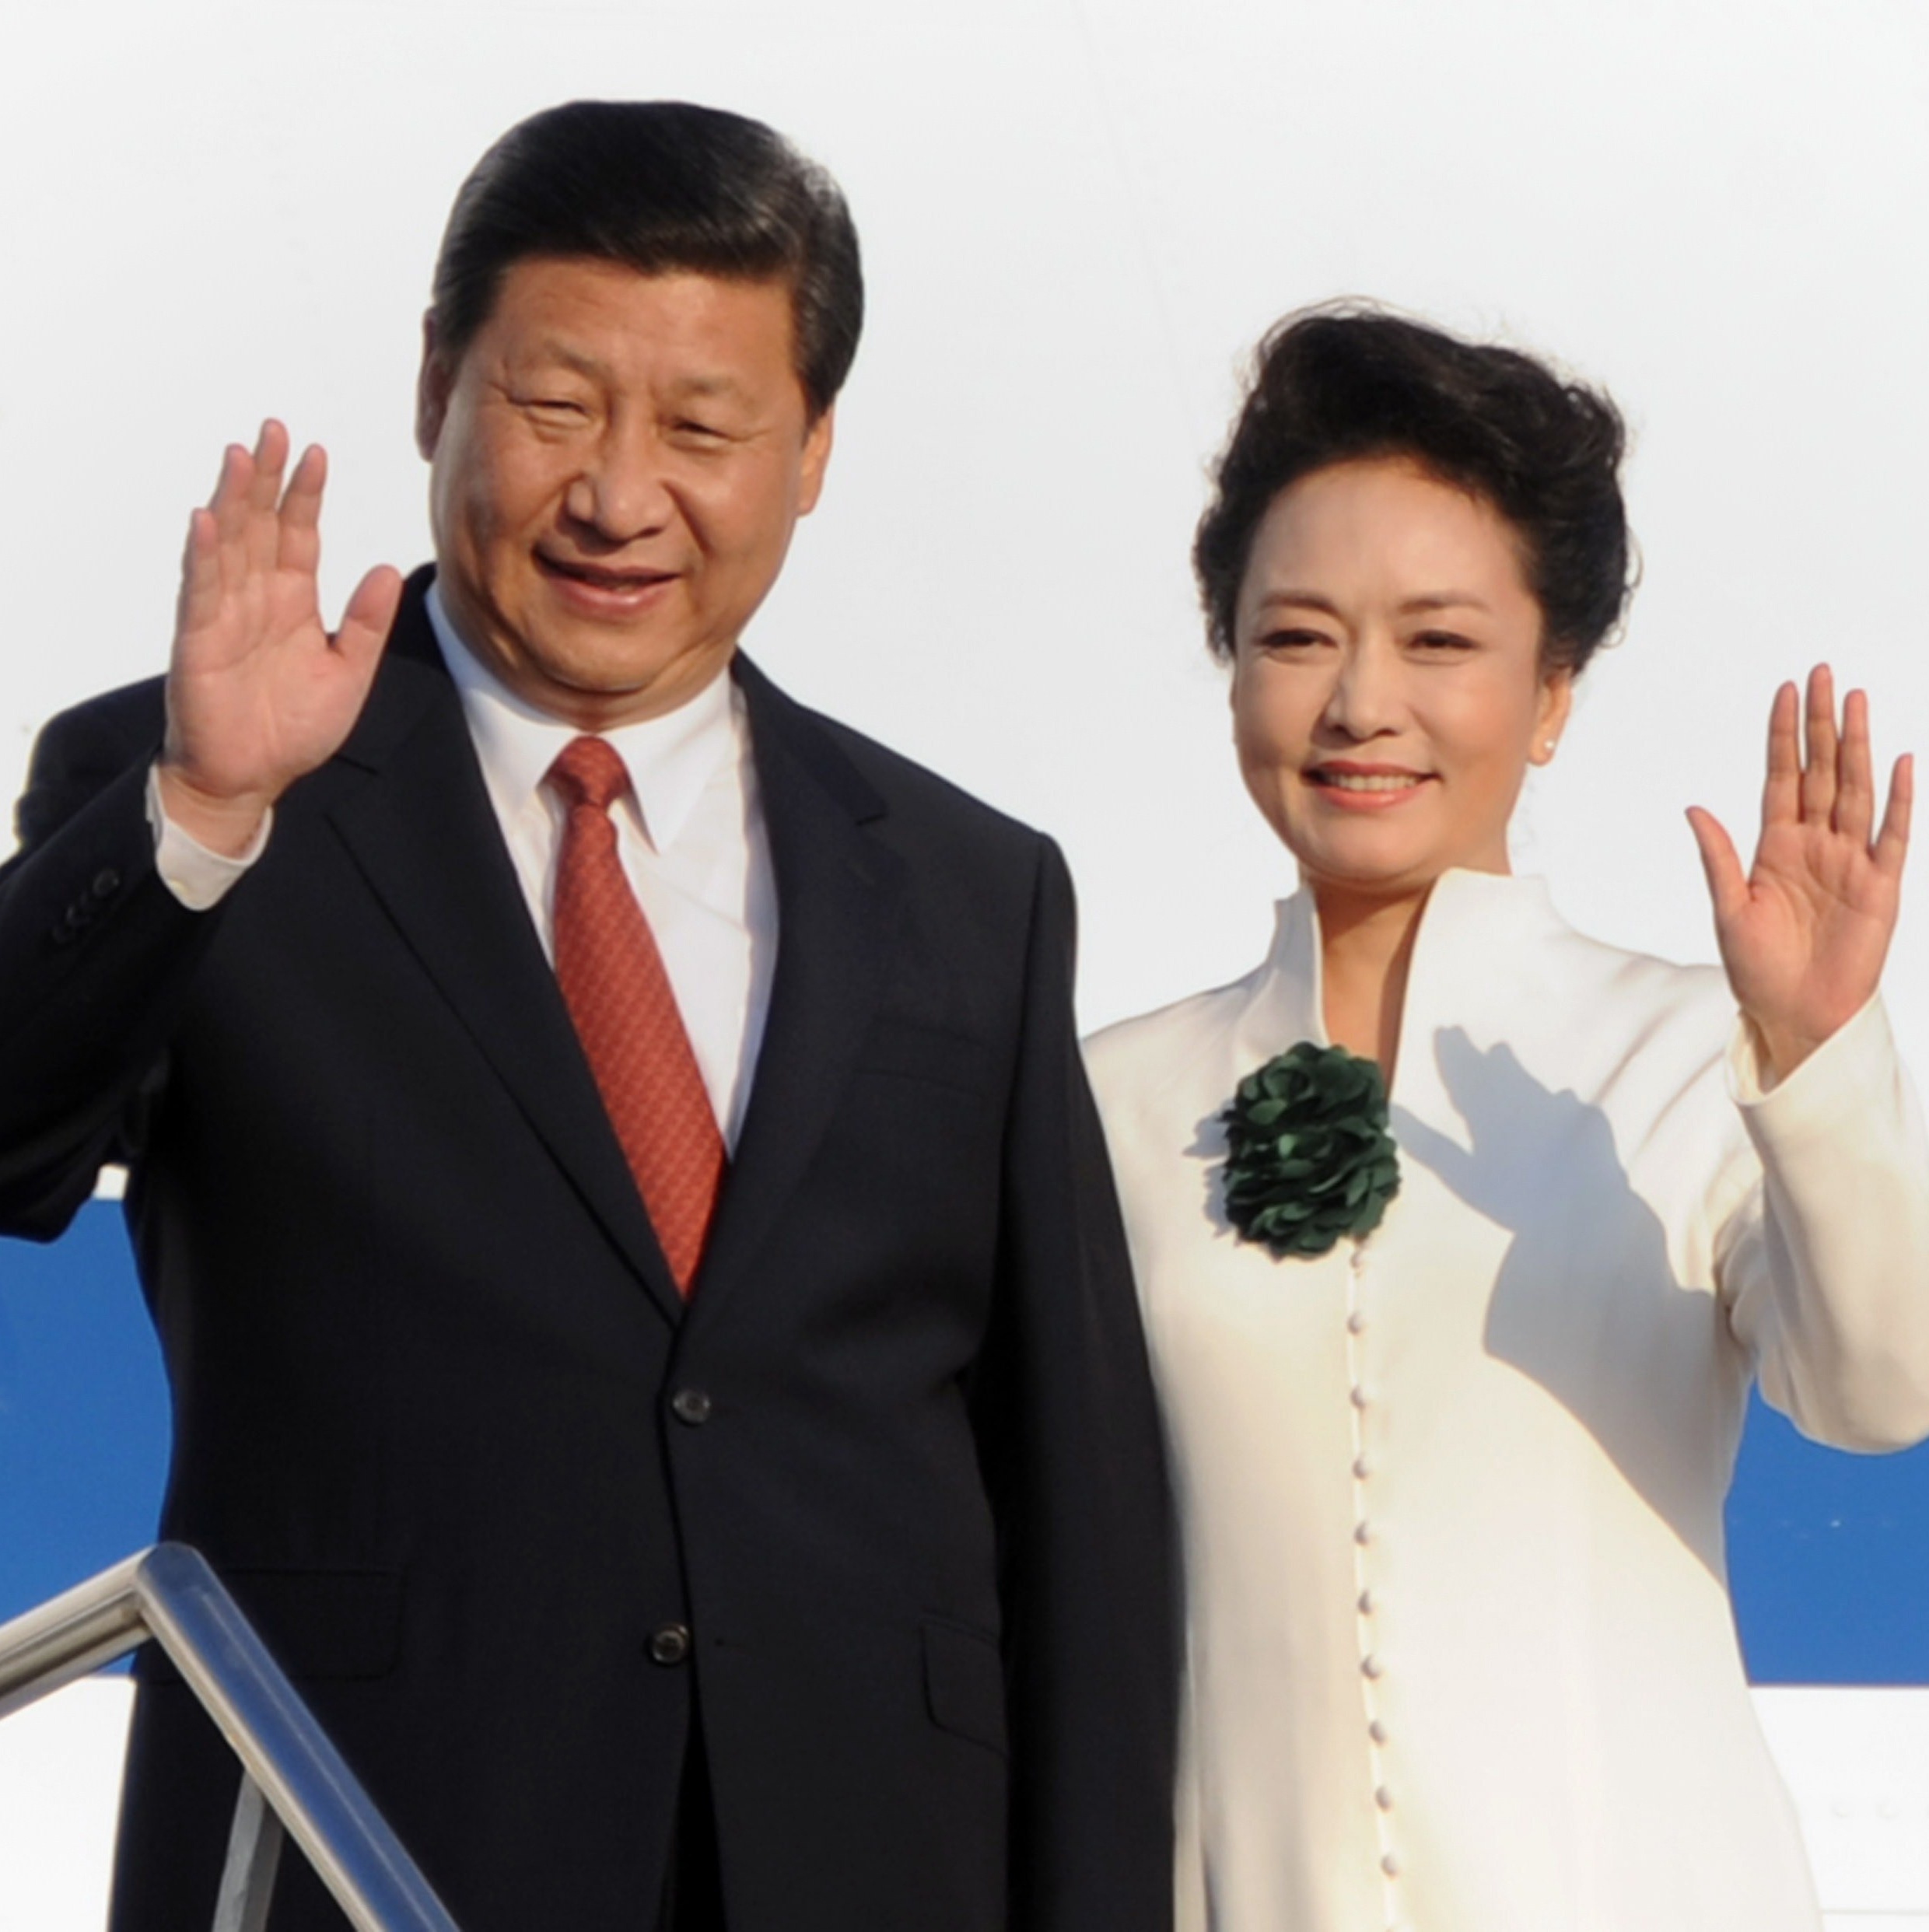 De perseguição por Mao a casamento pop a história por trás de Xi Jinping - 25/03/2023 imagem foto